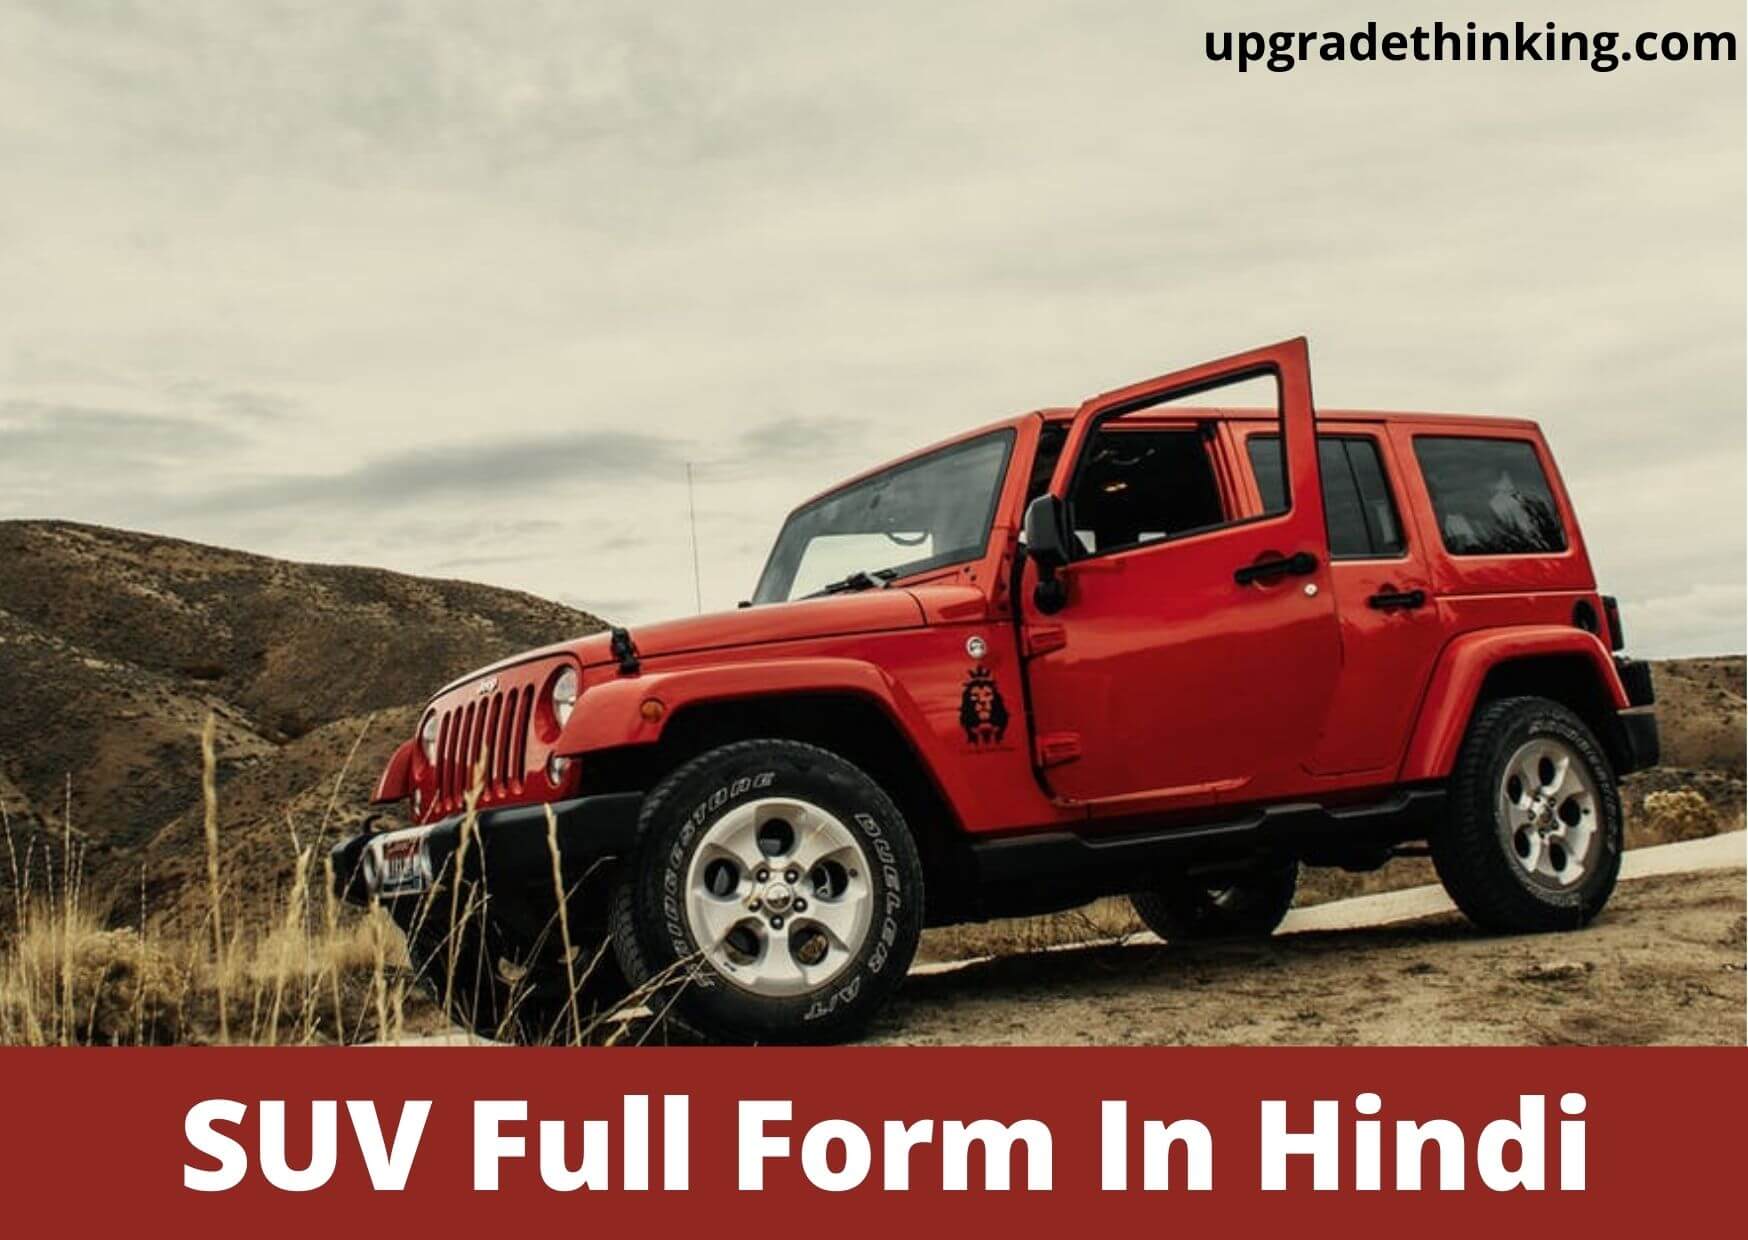 SUV Full Form In Hindi? - SUV à¤•à¥‡ à¤¬à¤¾à¤°à¥‡ à¤®à¥‡à¤‚ à¤ªà¥‚à¤°à¥€ à¤œà¤¾à¤¨à¤•à¤¾à¤°à¥€